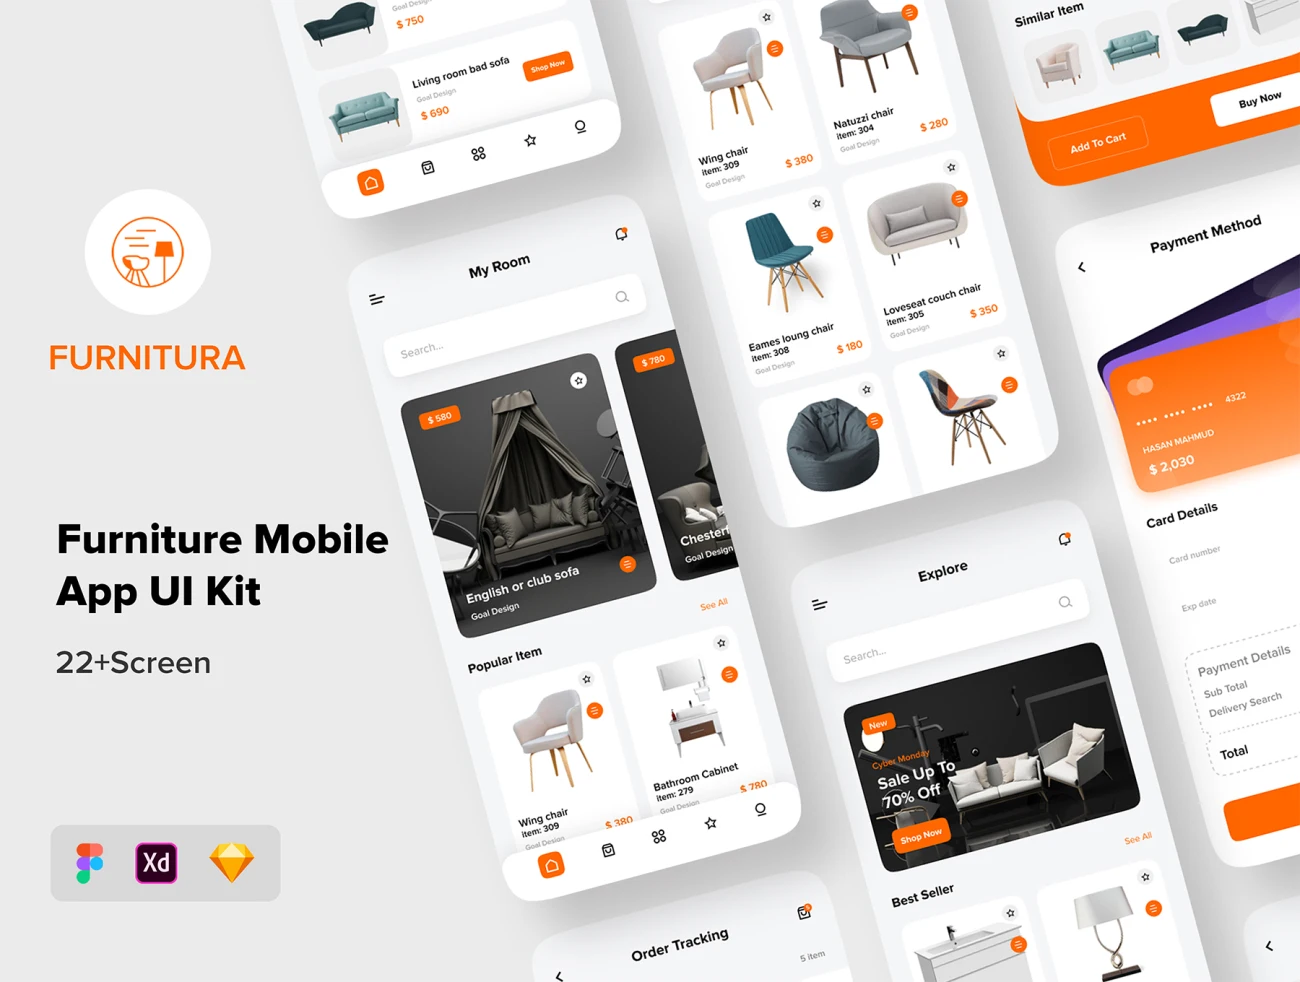 22屏家具商店简约创意应用Ui设计套件 FURNITURA – Furniture Mobile App UI Kit插图1